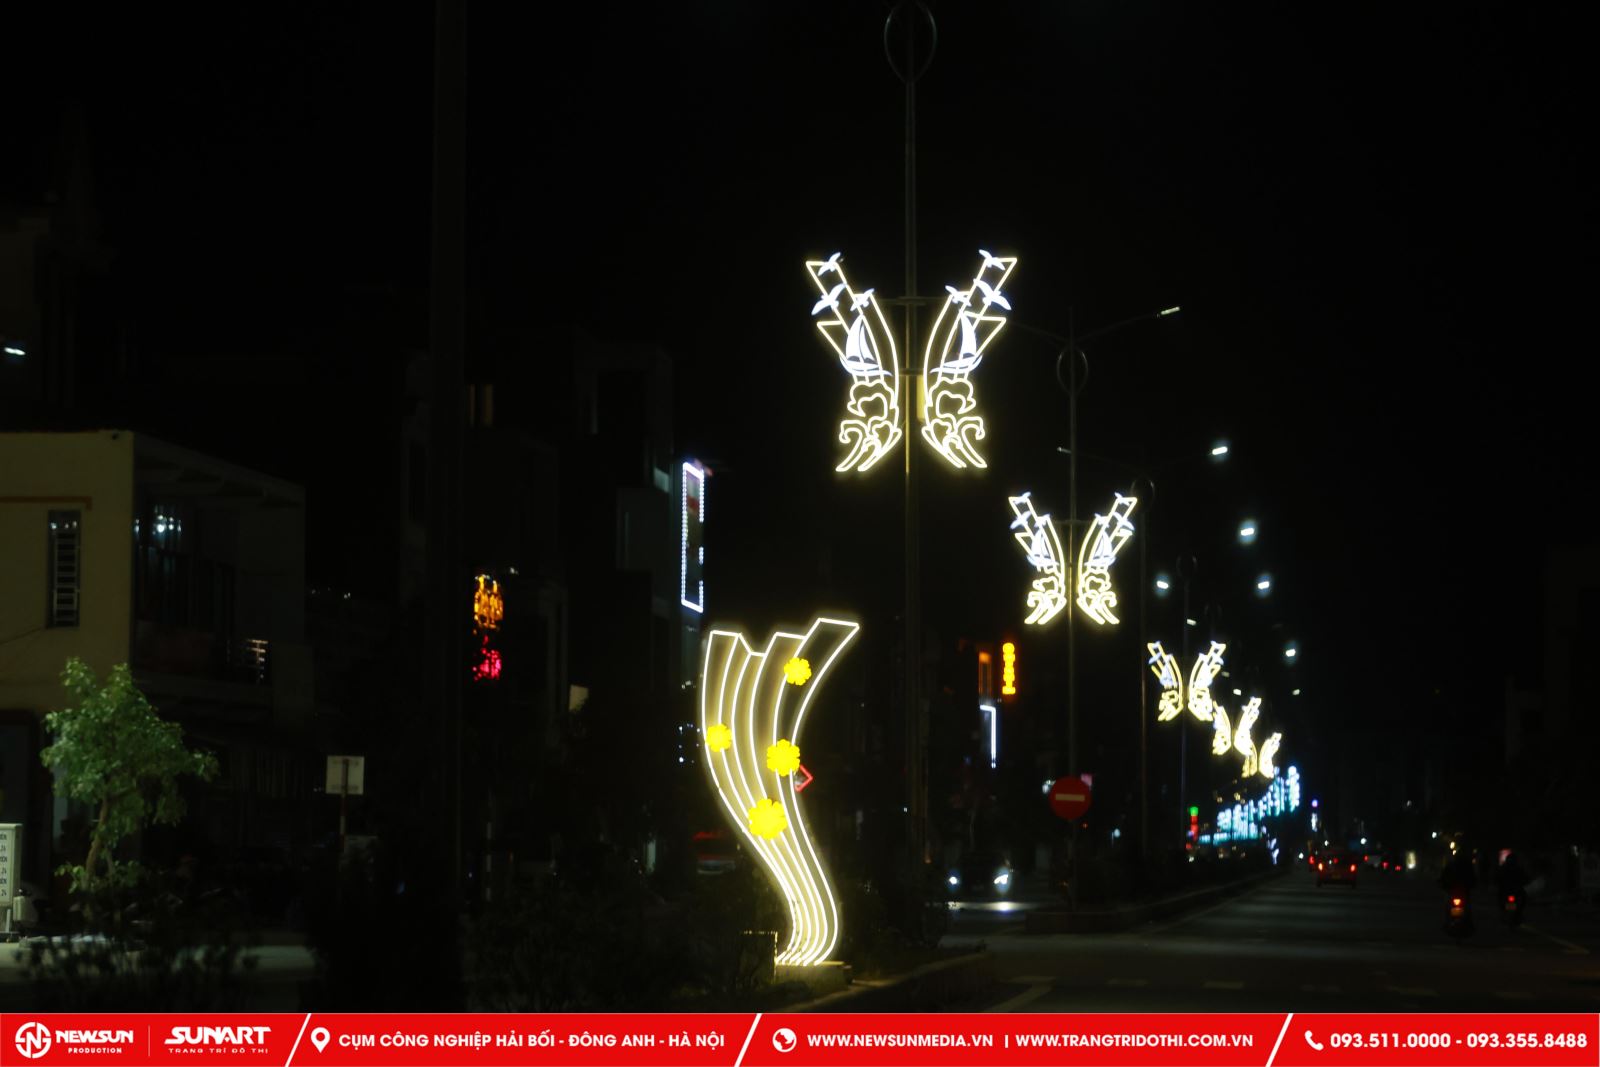 Đèn LED trang trí đô thị là loại đèn sử dụng công nghệ LED để tạo ra ánh sáng đẹp mắt